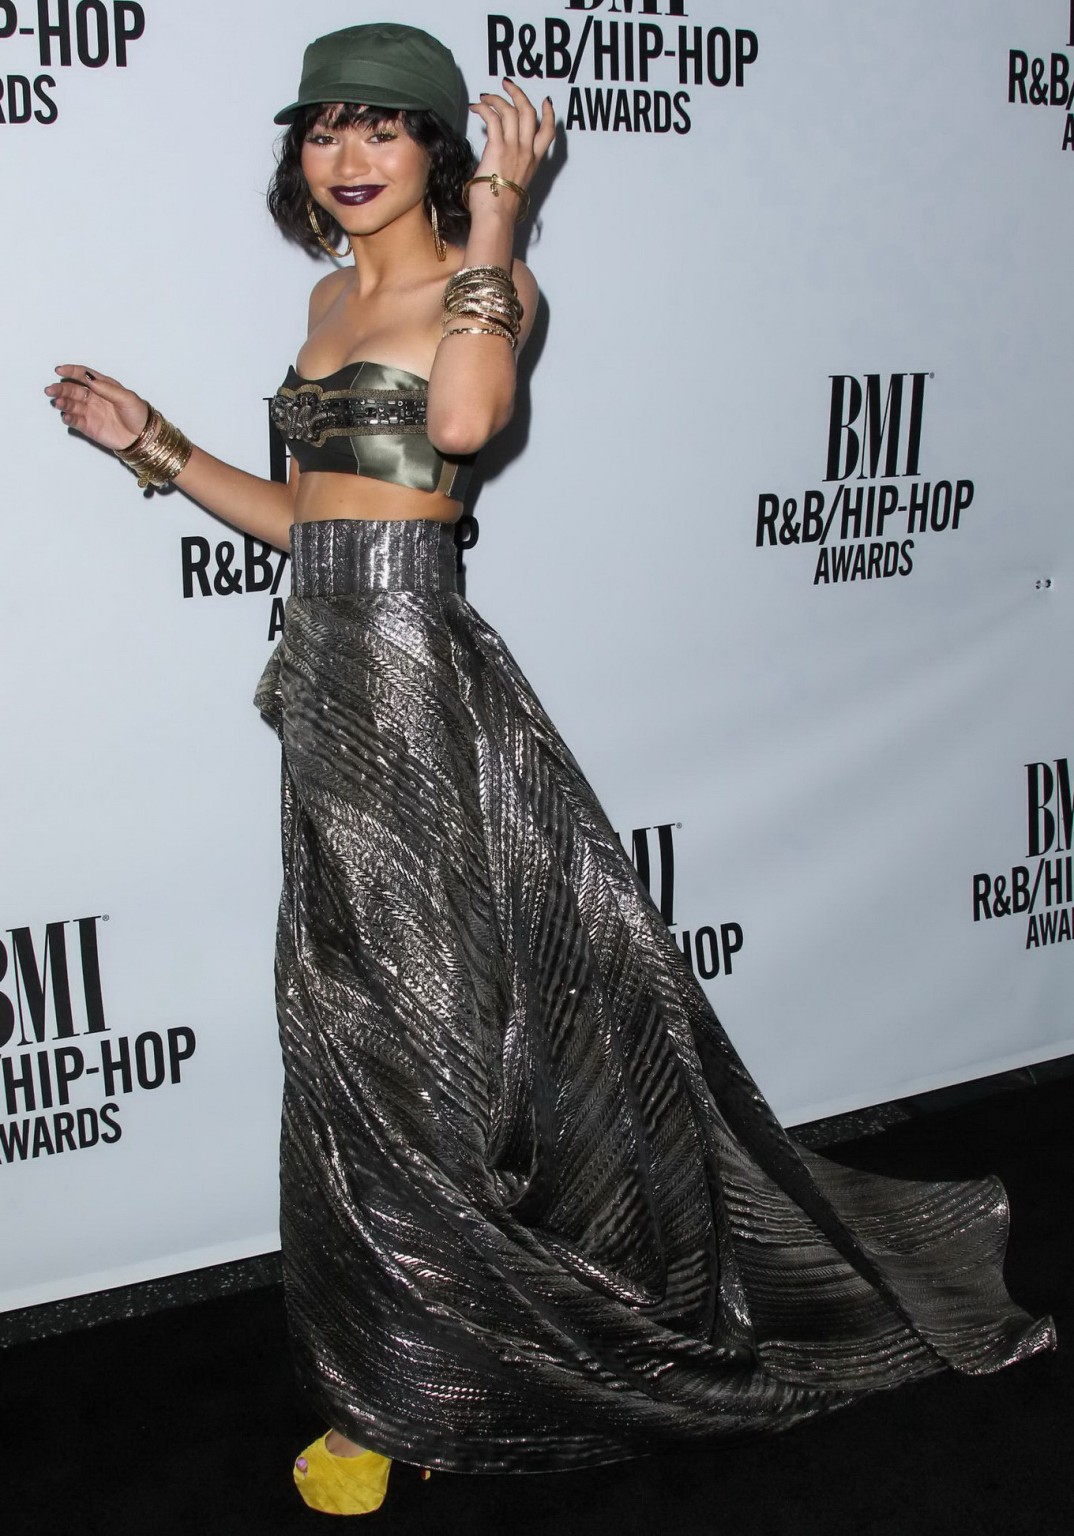 Zendaya coleman zeigt ihre Brüste in einem winzigen bauchfreien Top bei den bmi rb hip hop awards
 #75187503